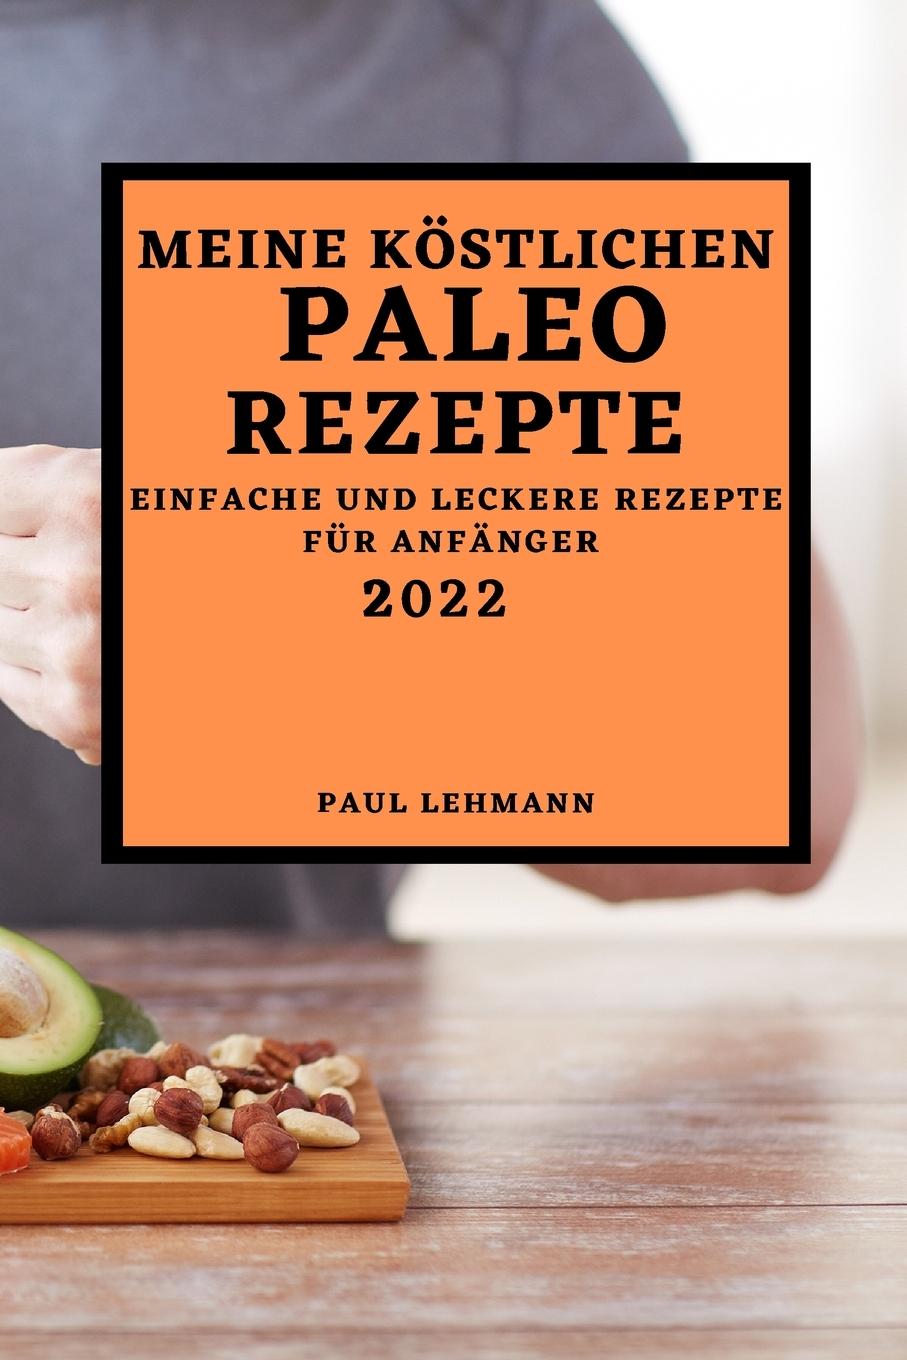 Kniha Meine Koestlichen Paleo Rezepte 2022 